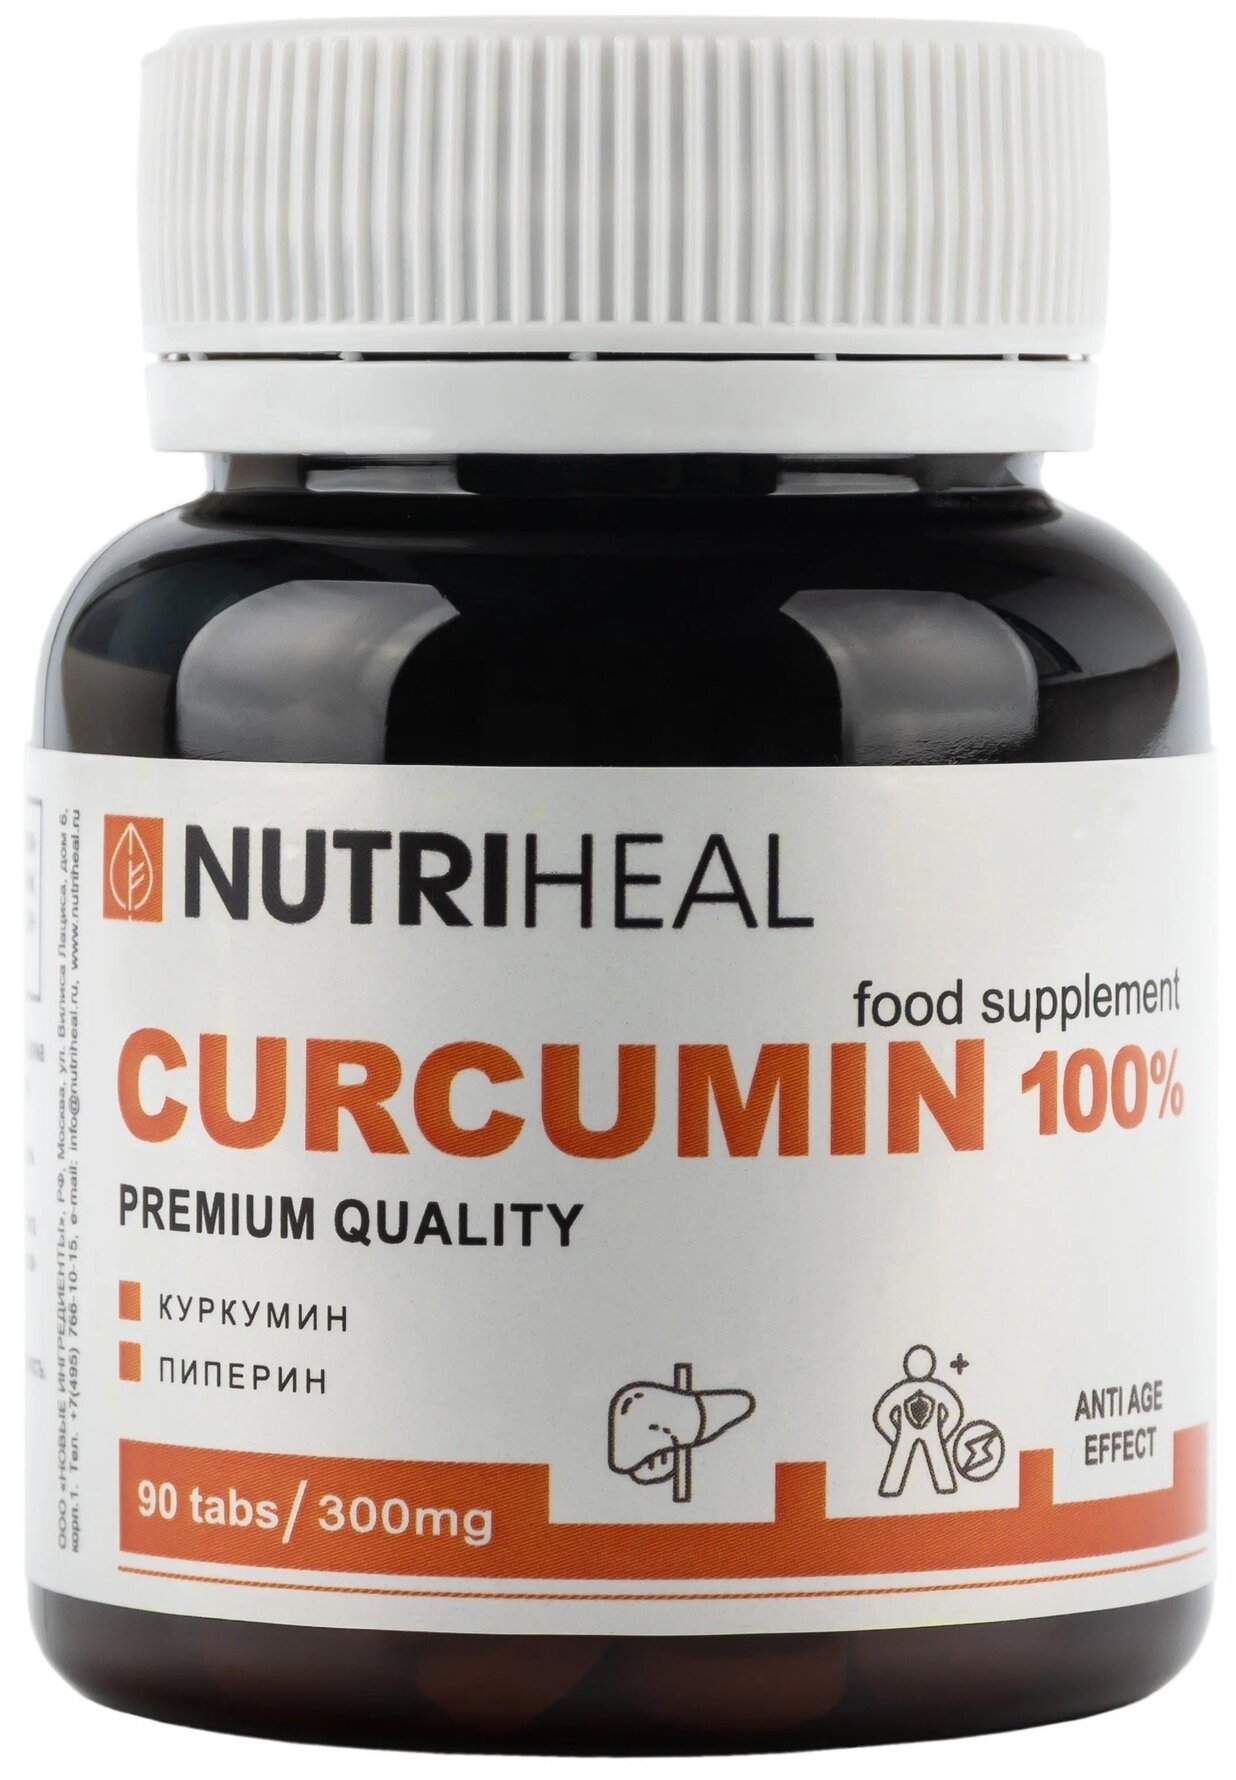 Таблетки Nutriheal Curcumin 100%